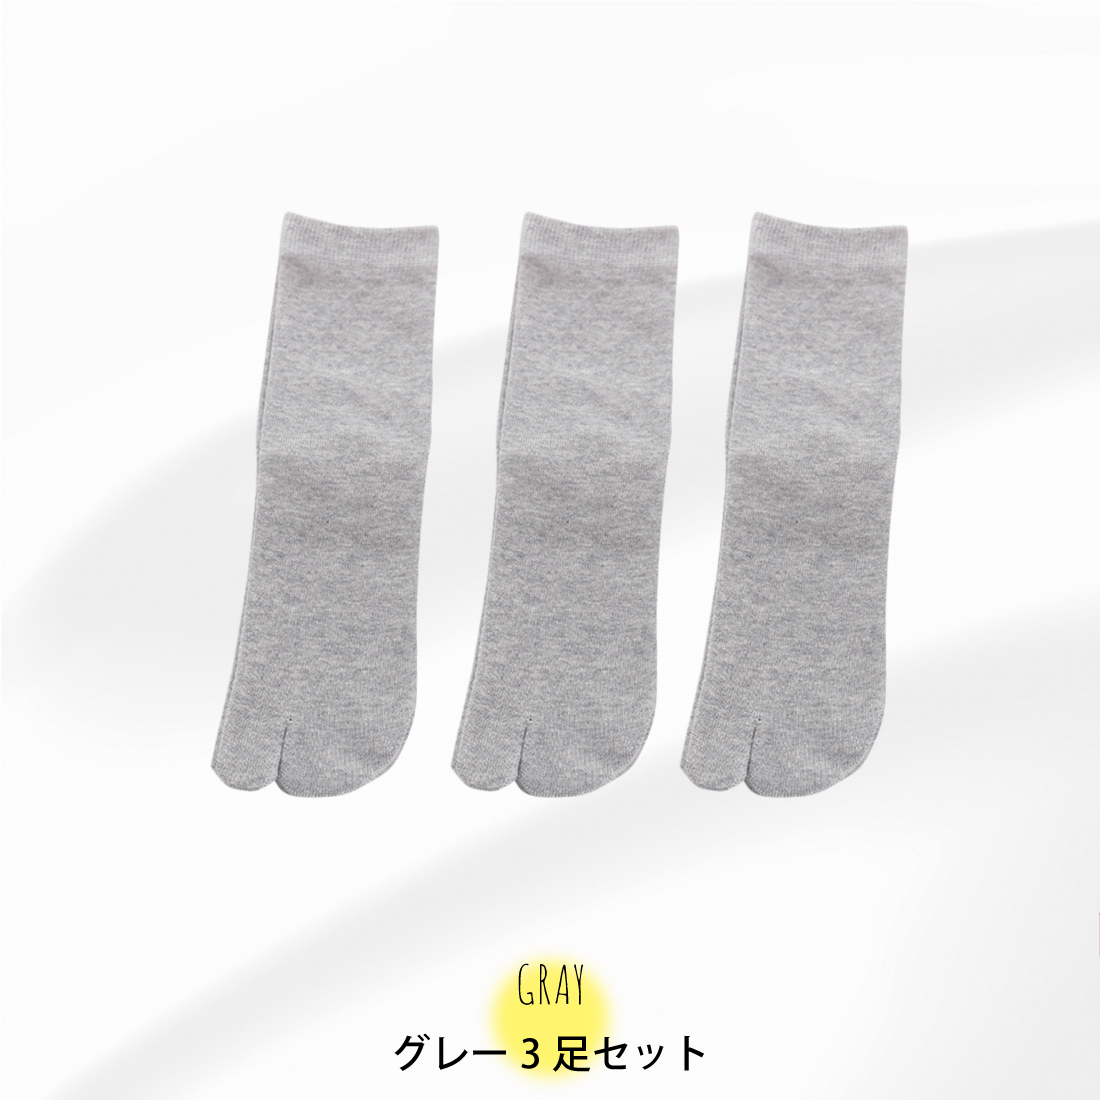 [3足セット] 足袋ソックス レディース 靴下 足袋型シューズ 防臭 抗菌 効果